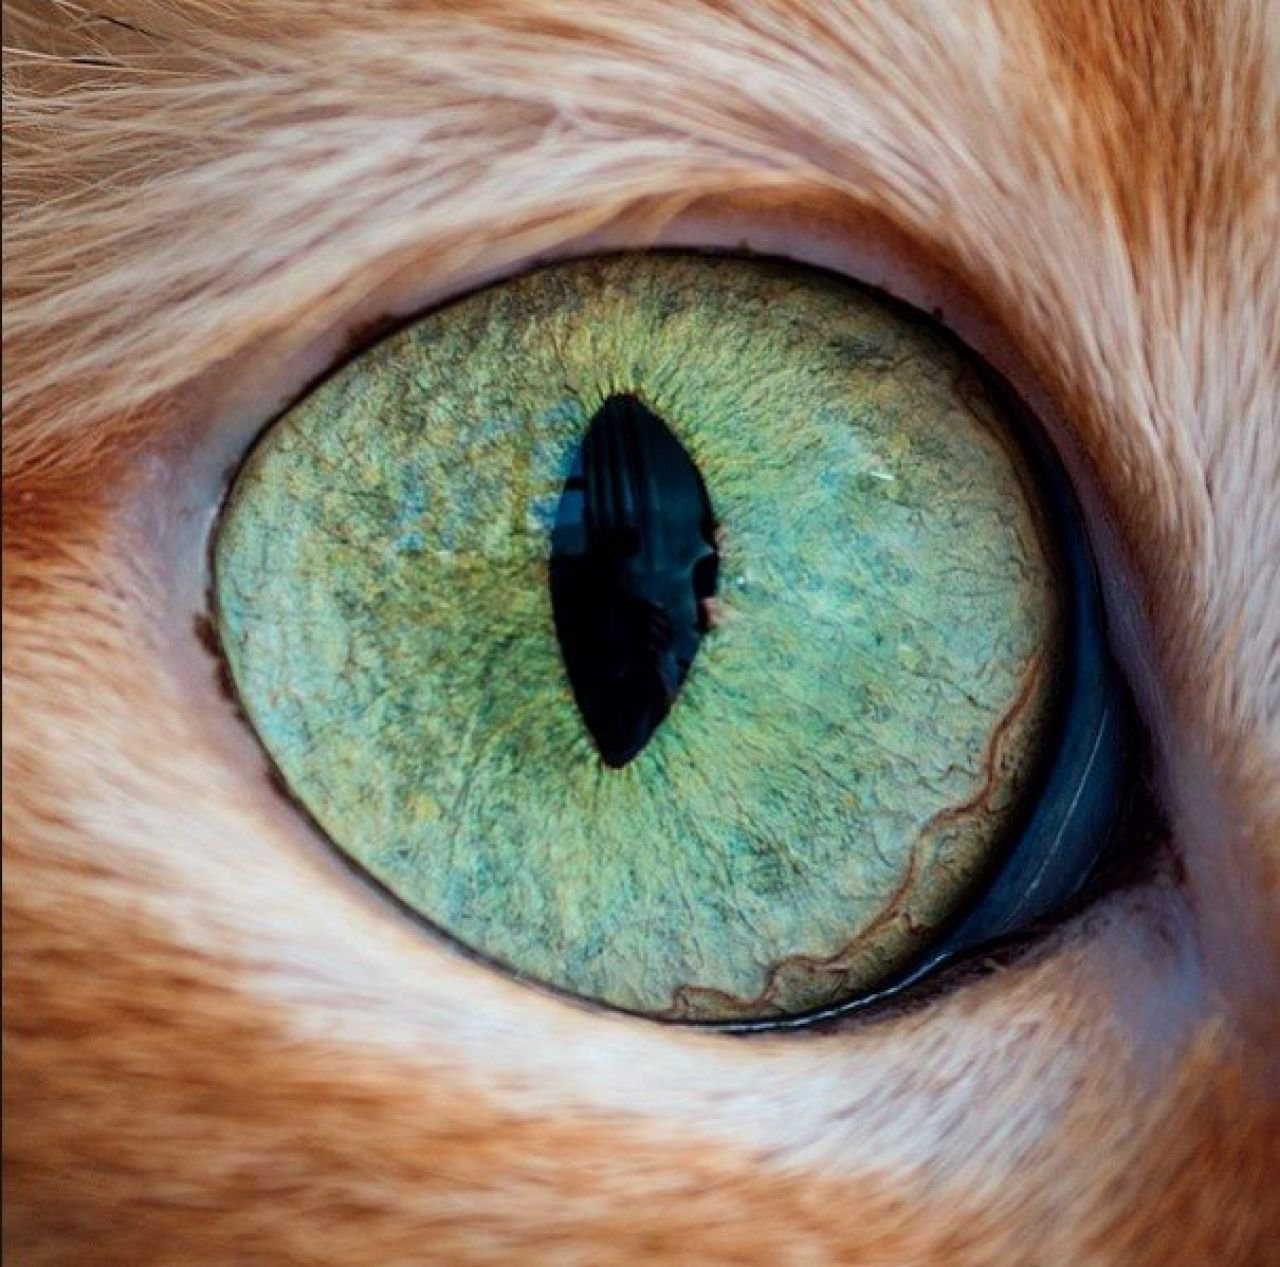 Радужка кошки. Глаза кошки. Кошачий глаз. Кошачий зрачок. Зрачок глаза кошки.